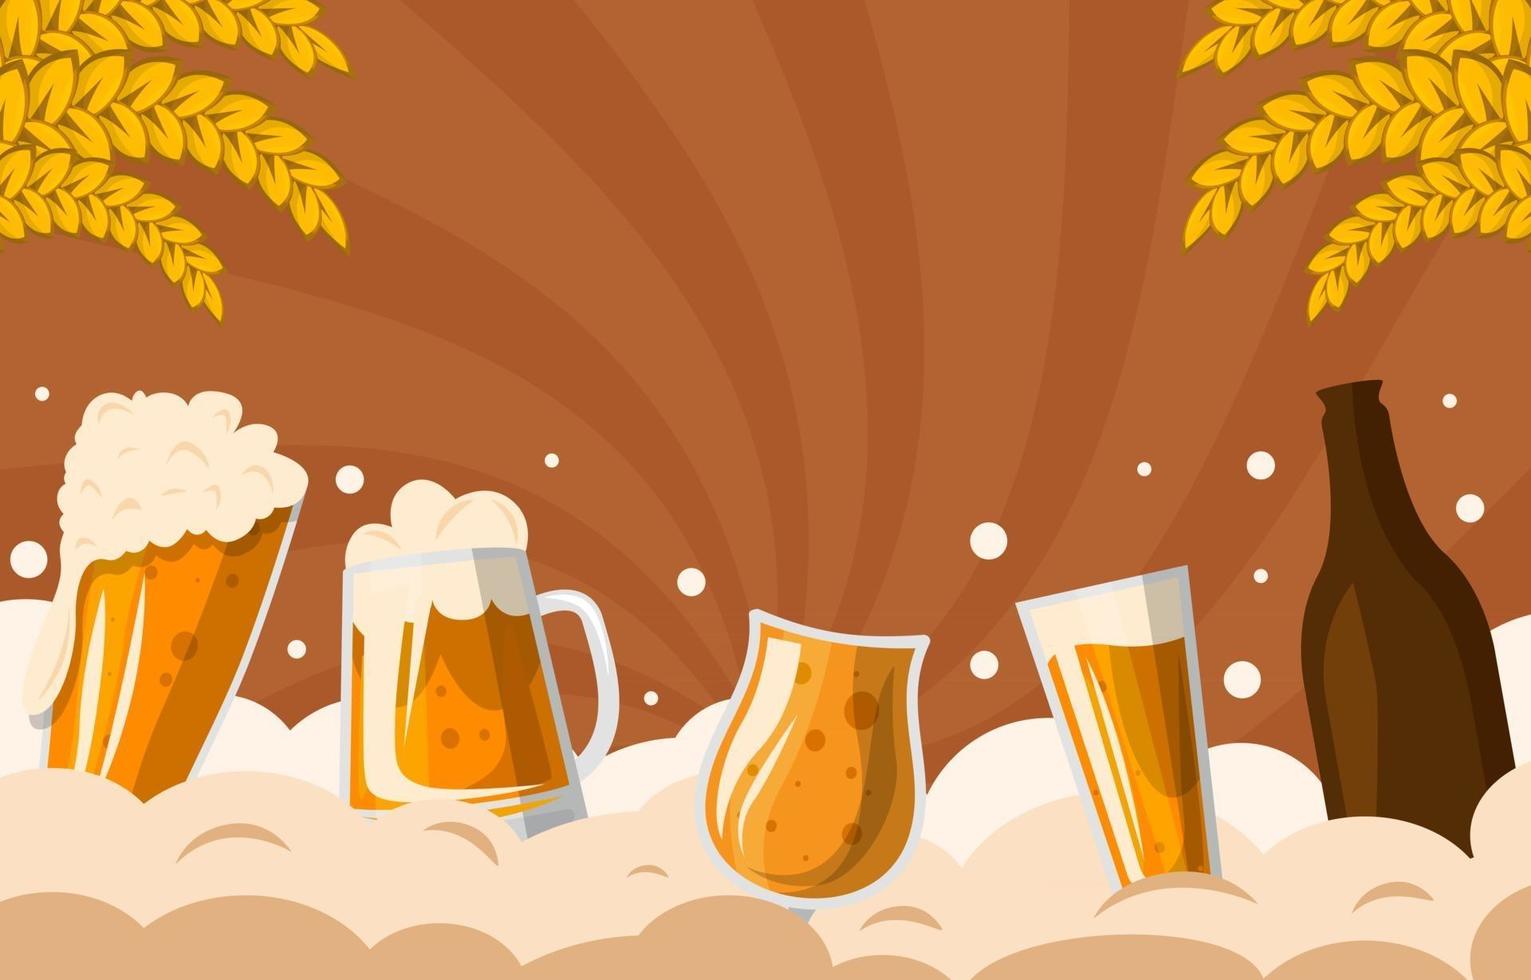 Celebration of Beer Background vector